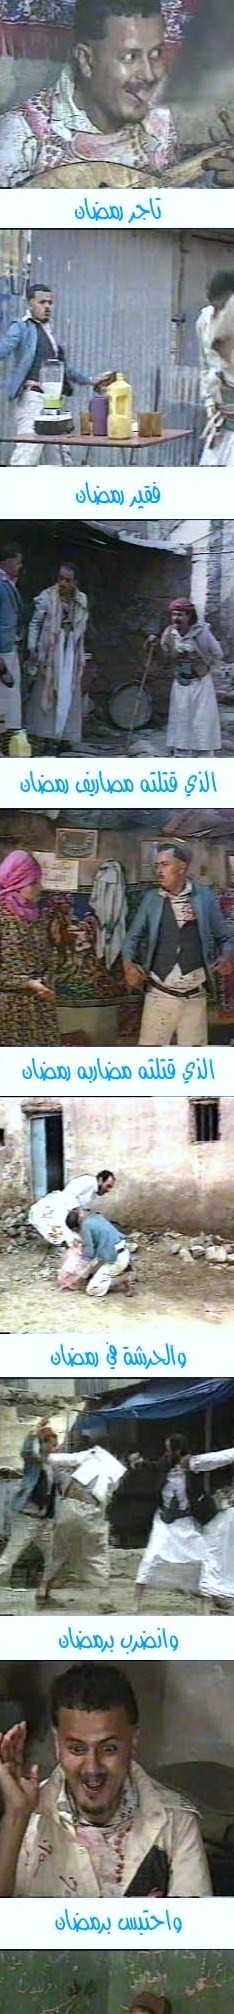 المسلسل اليمني ( حكاية دحباش) - صفحة 2 Shadda10